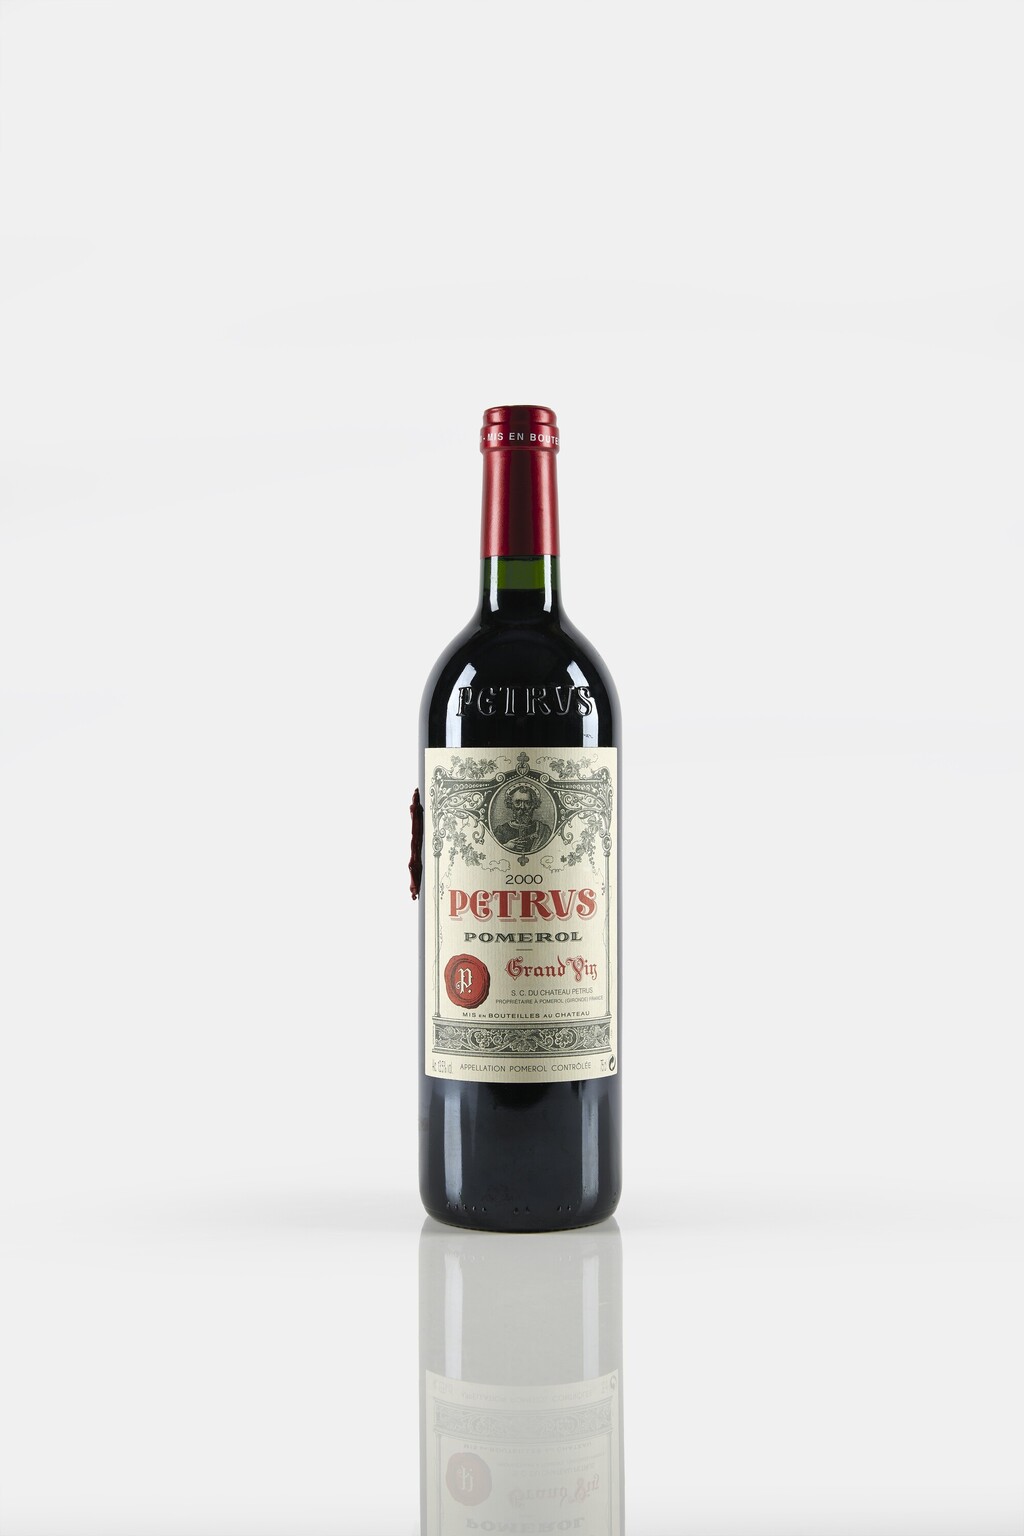 יין פטרוס 2000 מכירה פומבית כריסטי'ס יון בחלל